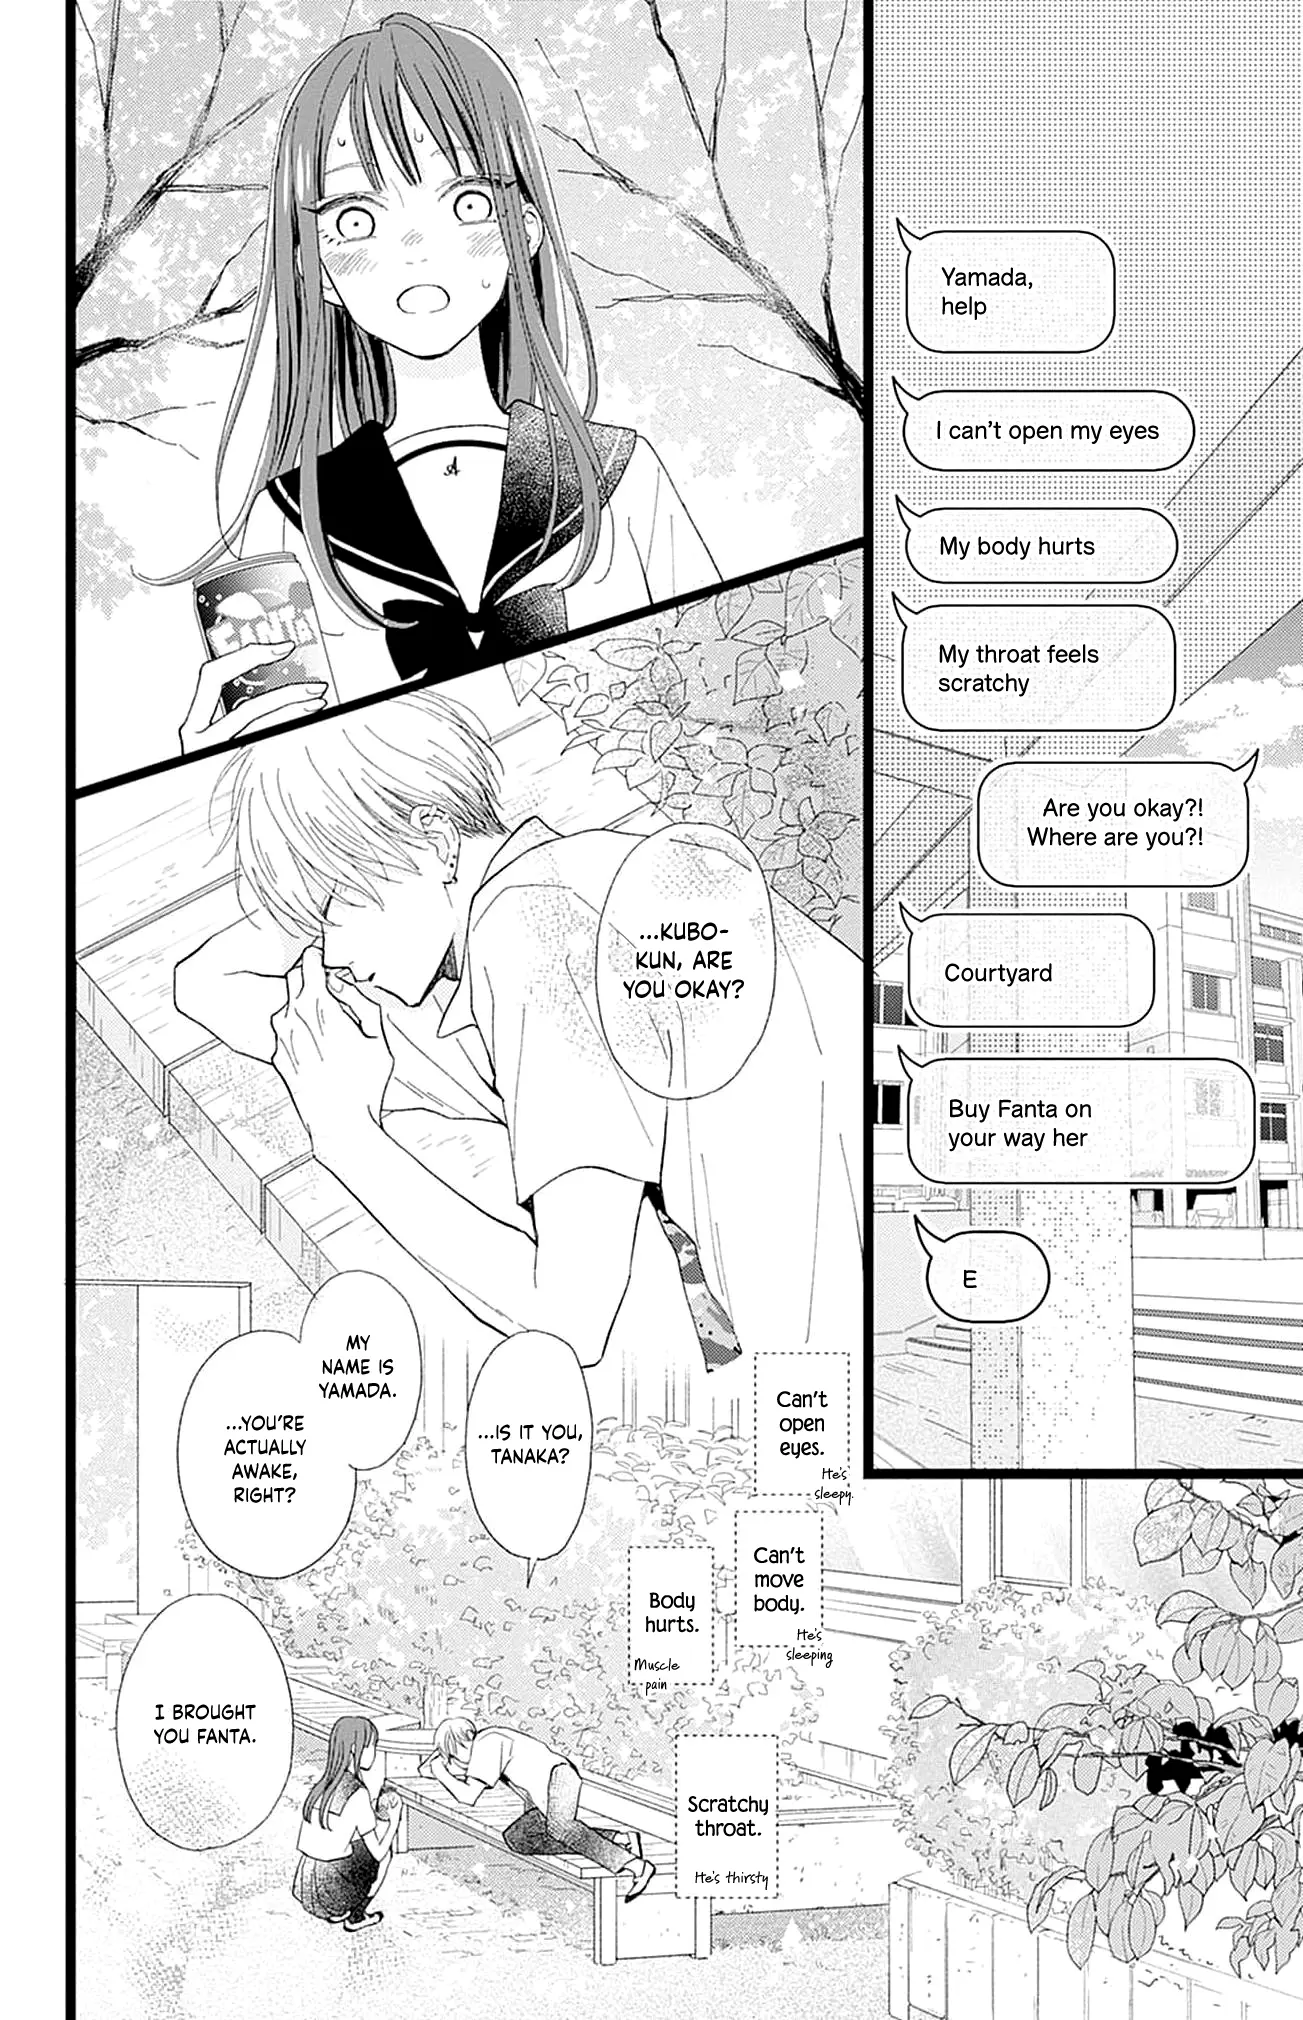 Yamada-Ke No Onna - 2 page 12-0ce66a04